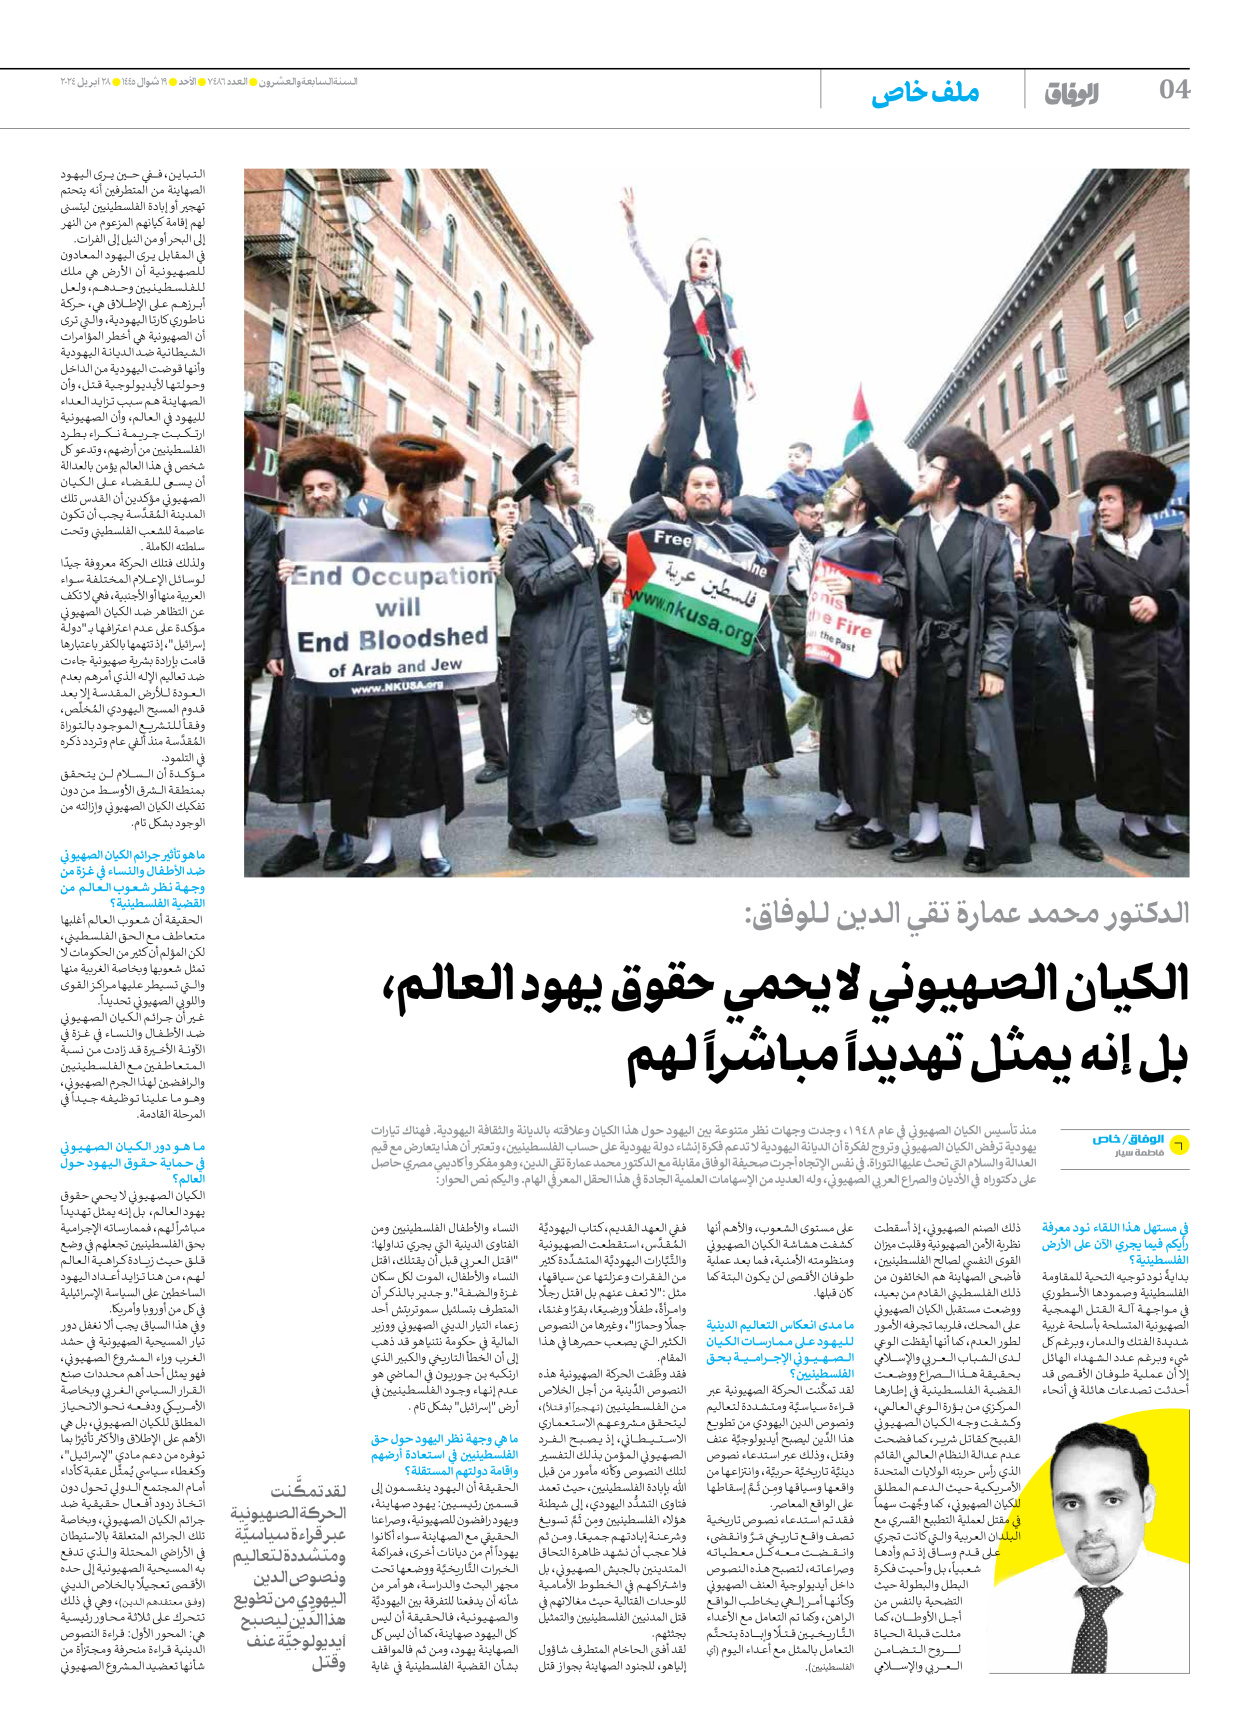 صحیفة ایران الدولیة الوفاق - العدد سبعة آلاف وأربعمائة وستة وثمانون - ٢٨ أبريل ٢٠٢٤ - الصفحة ٤